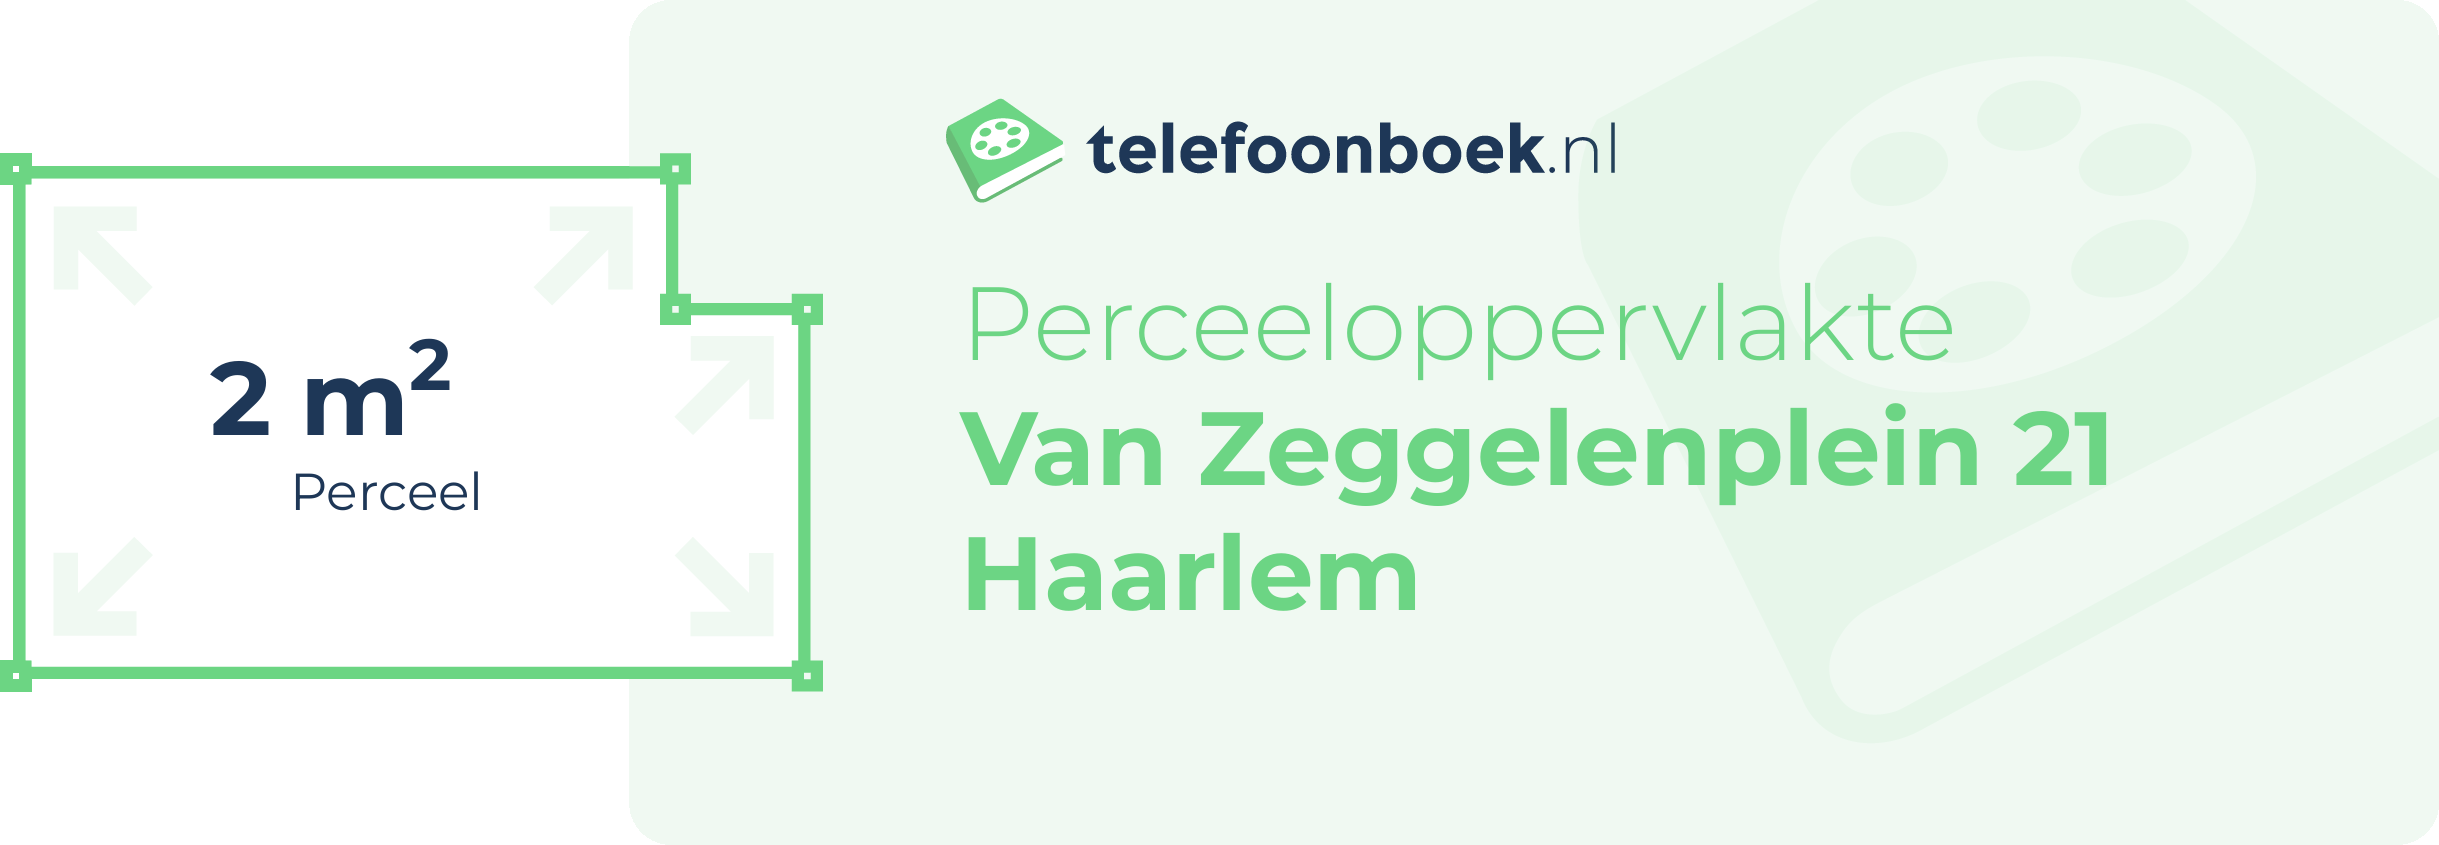 Perceeloppervlakte Van Zeggelenplein 21 Haarlem